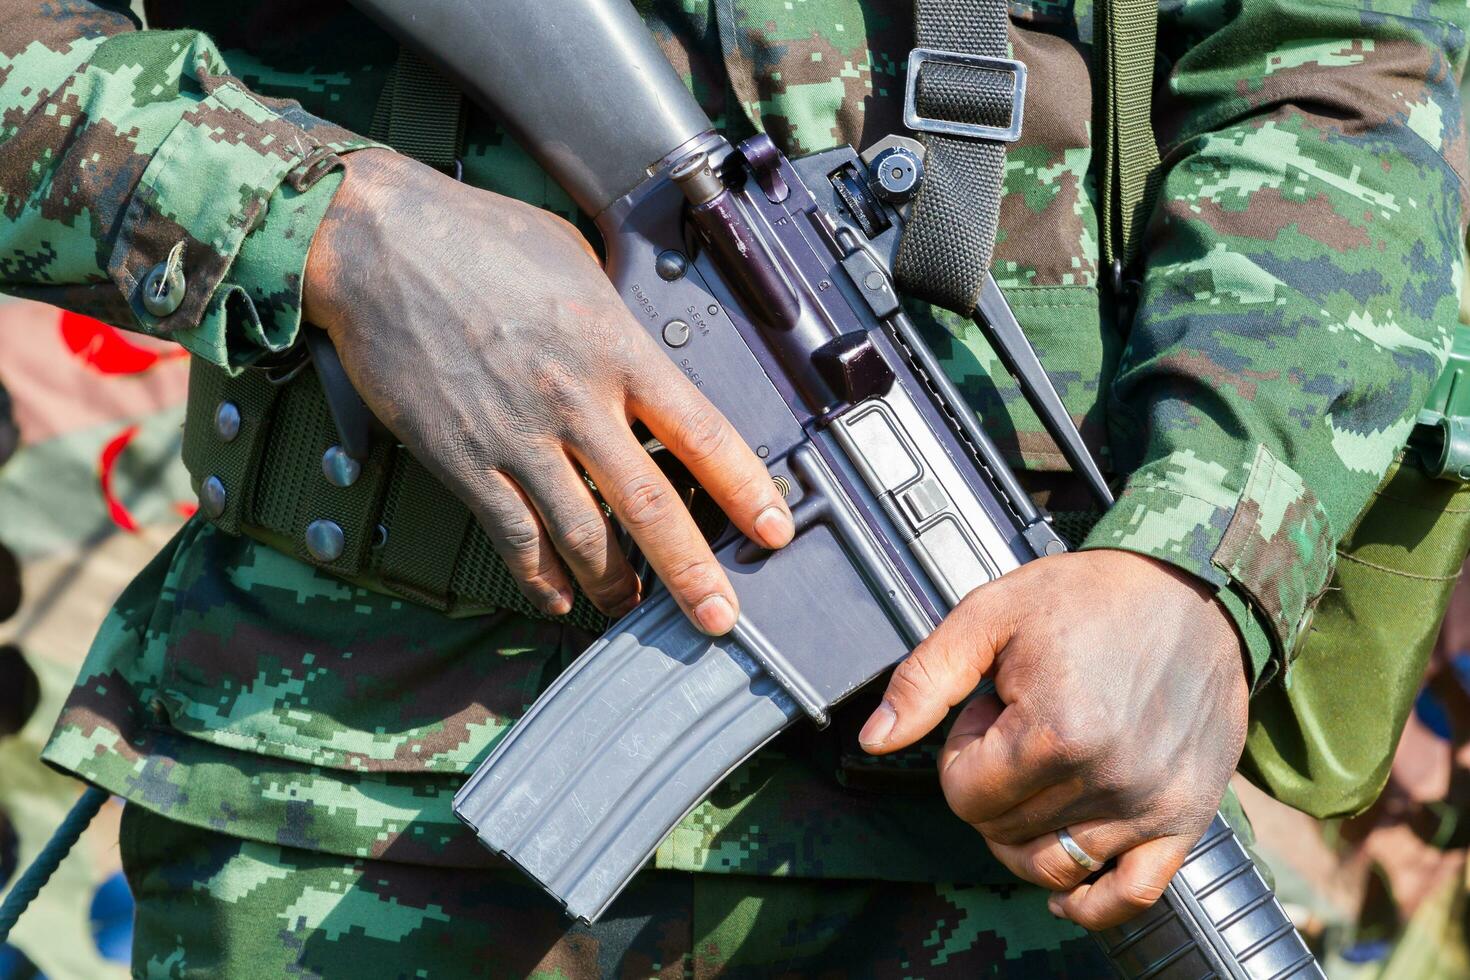 närbild manliga soldat händer som håller kulsprutan foto